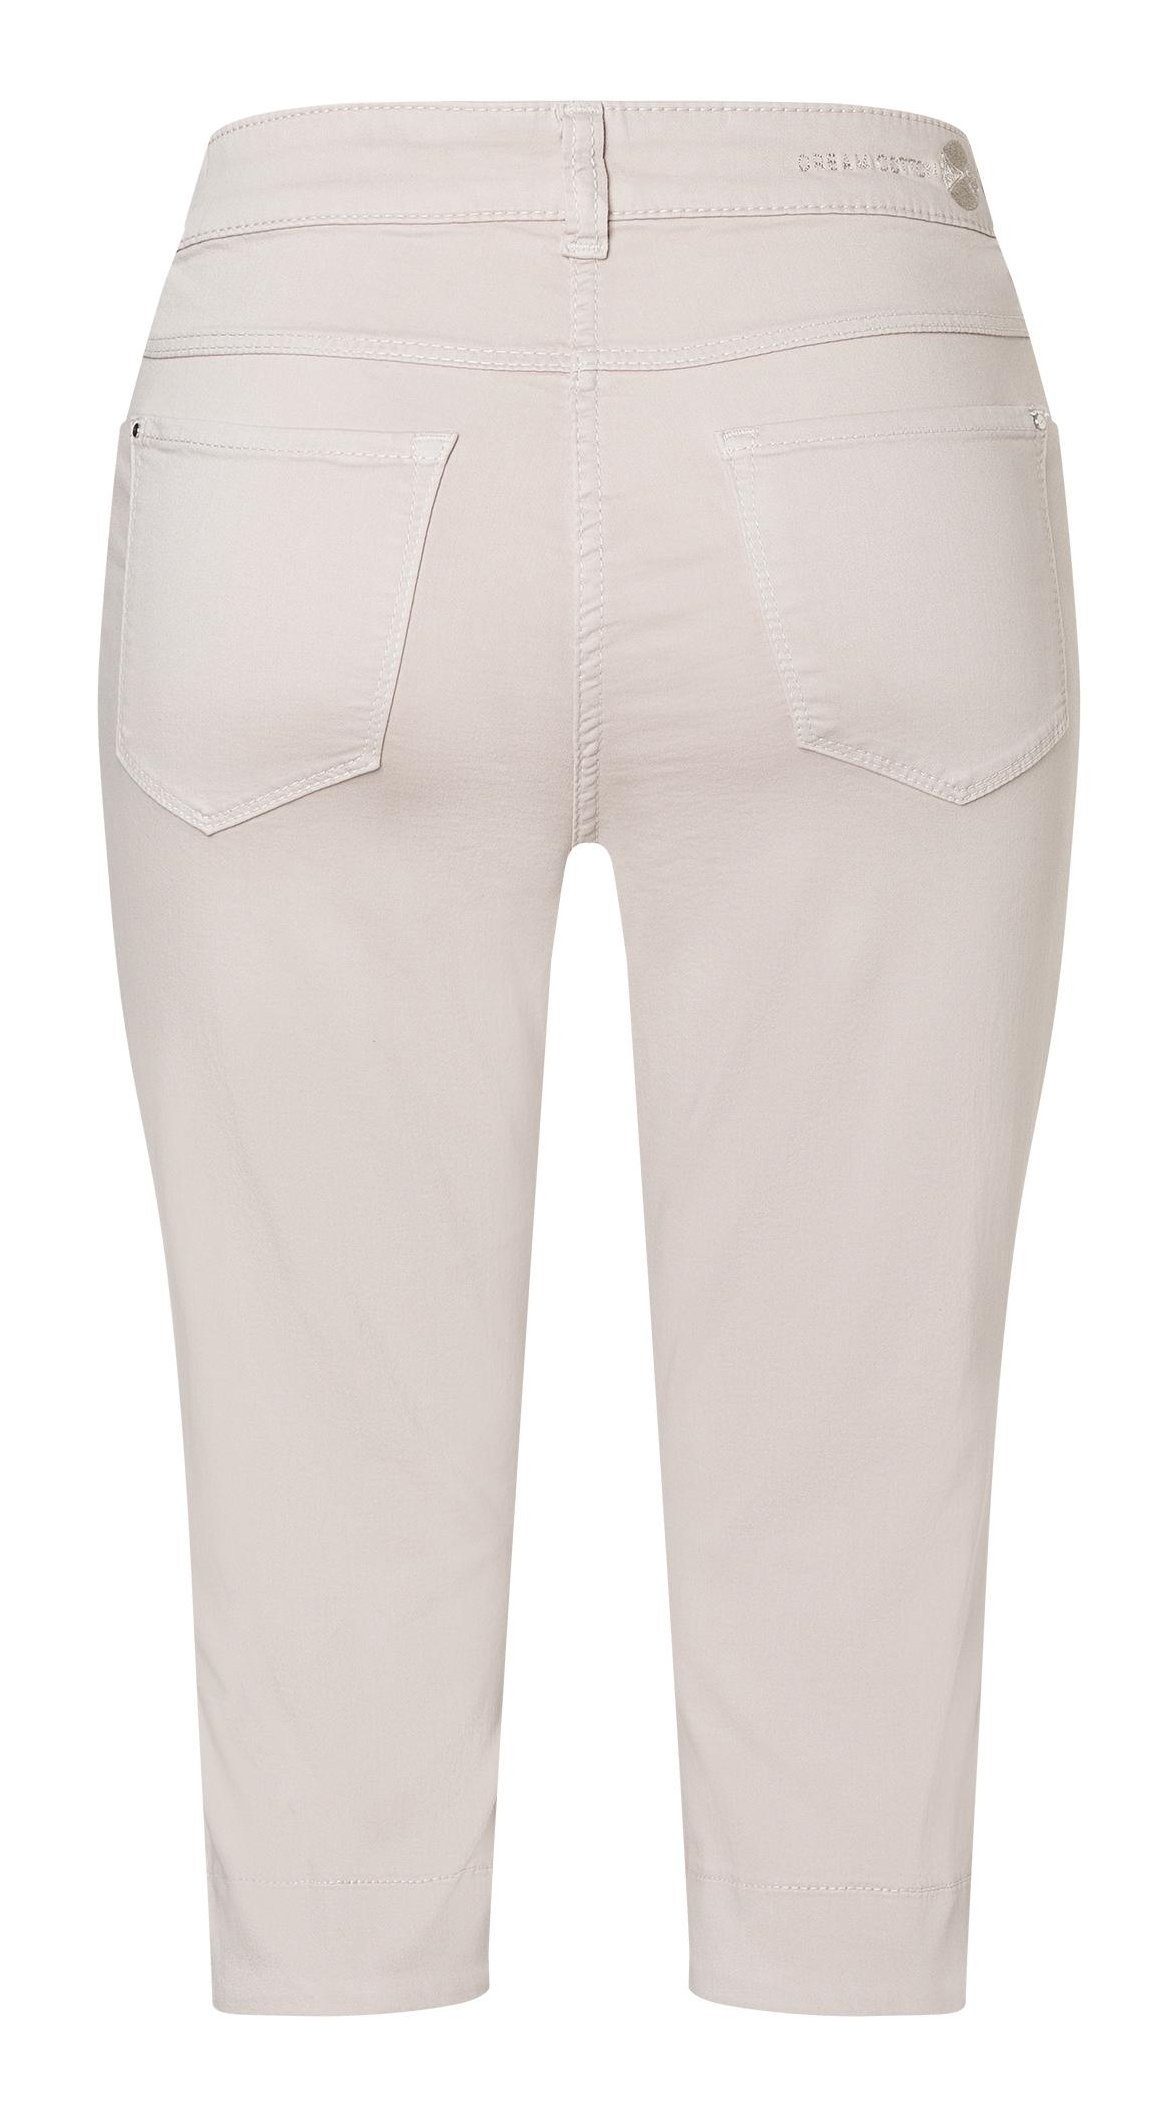 cotton CAPRI Stretch-Jeans beige MAC MAC 5476-00-0425-023R DREAM